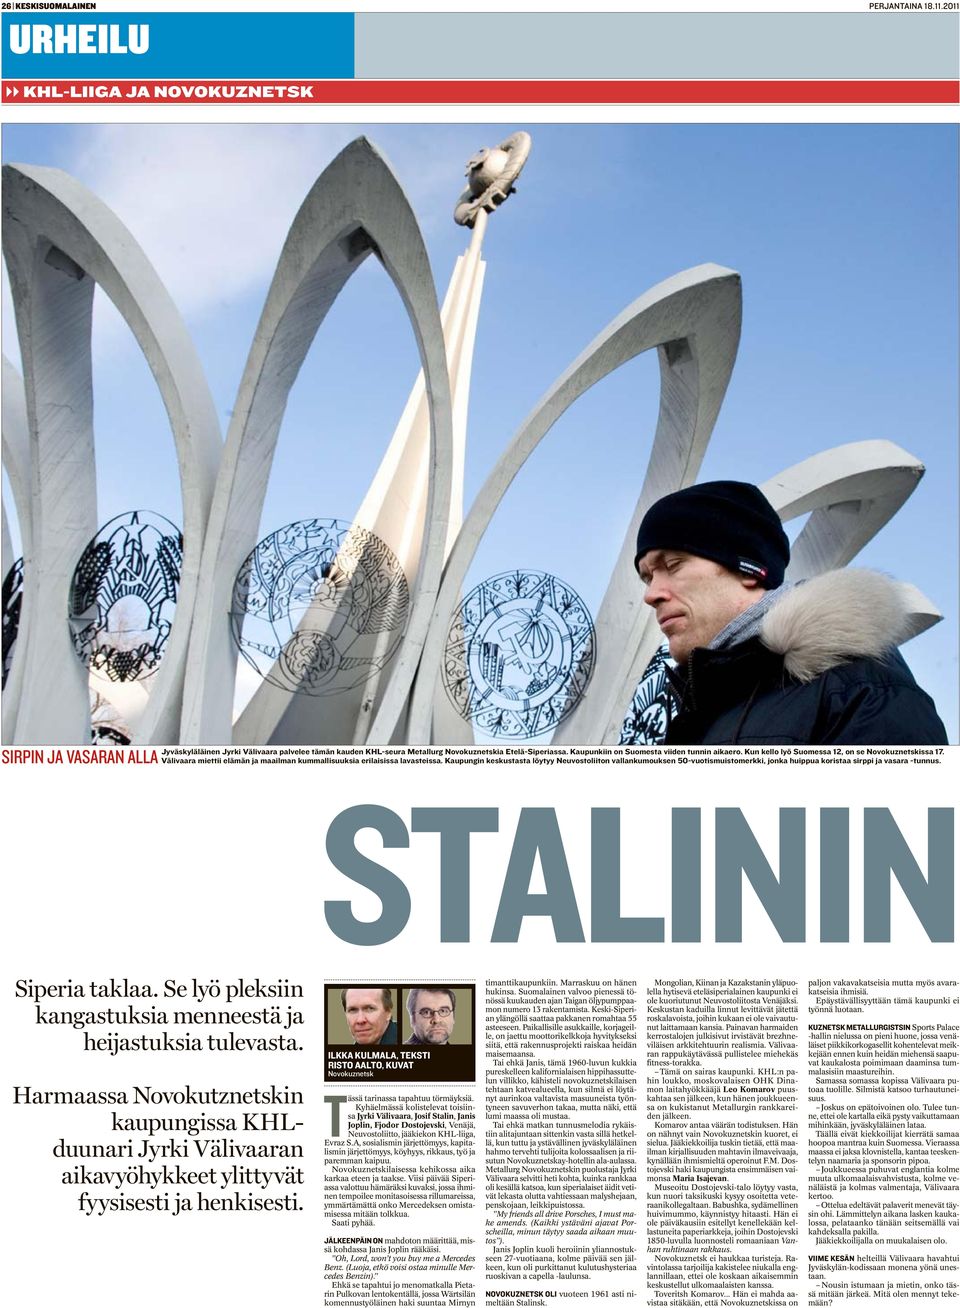 Kaupungin keskustasta löytyy Neuvostoliiton vallankumouksen 50-vuotismuistomerkki, jonka huippua koristaa sirppi ja vasara -tunnus. STALININ Siperia taklaa.